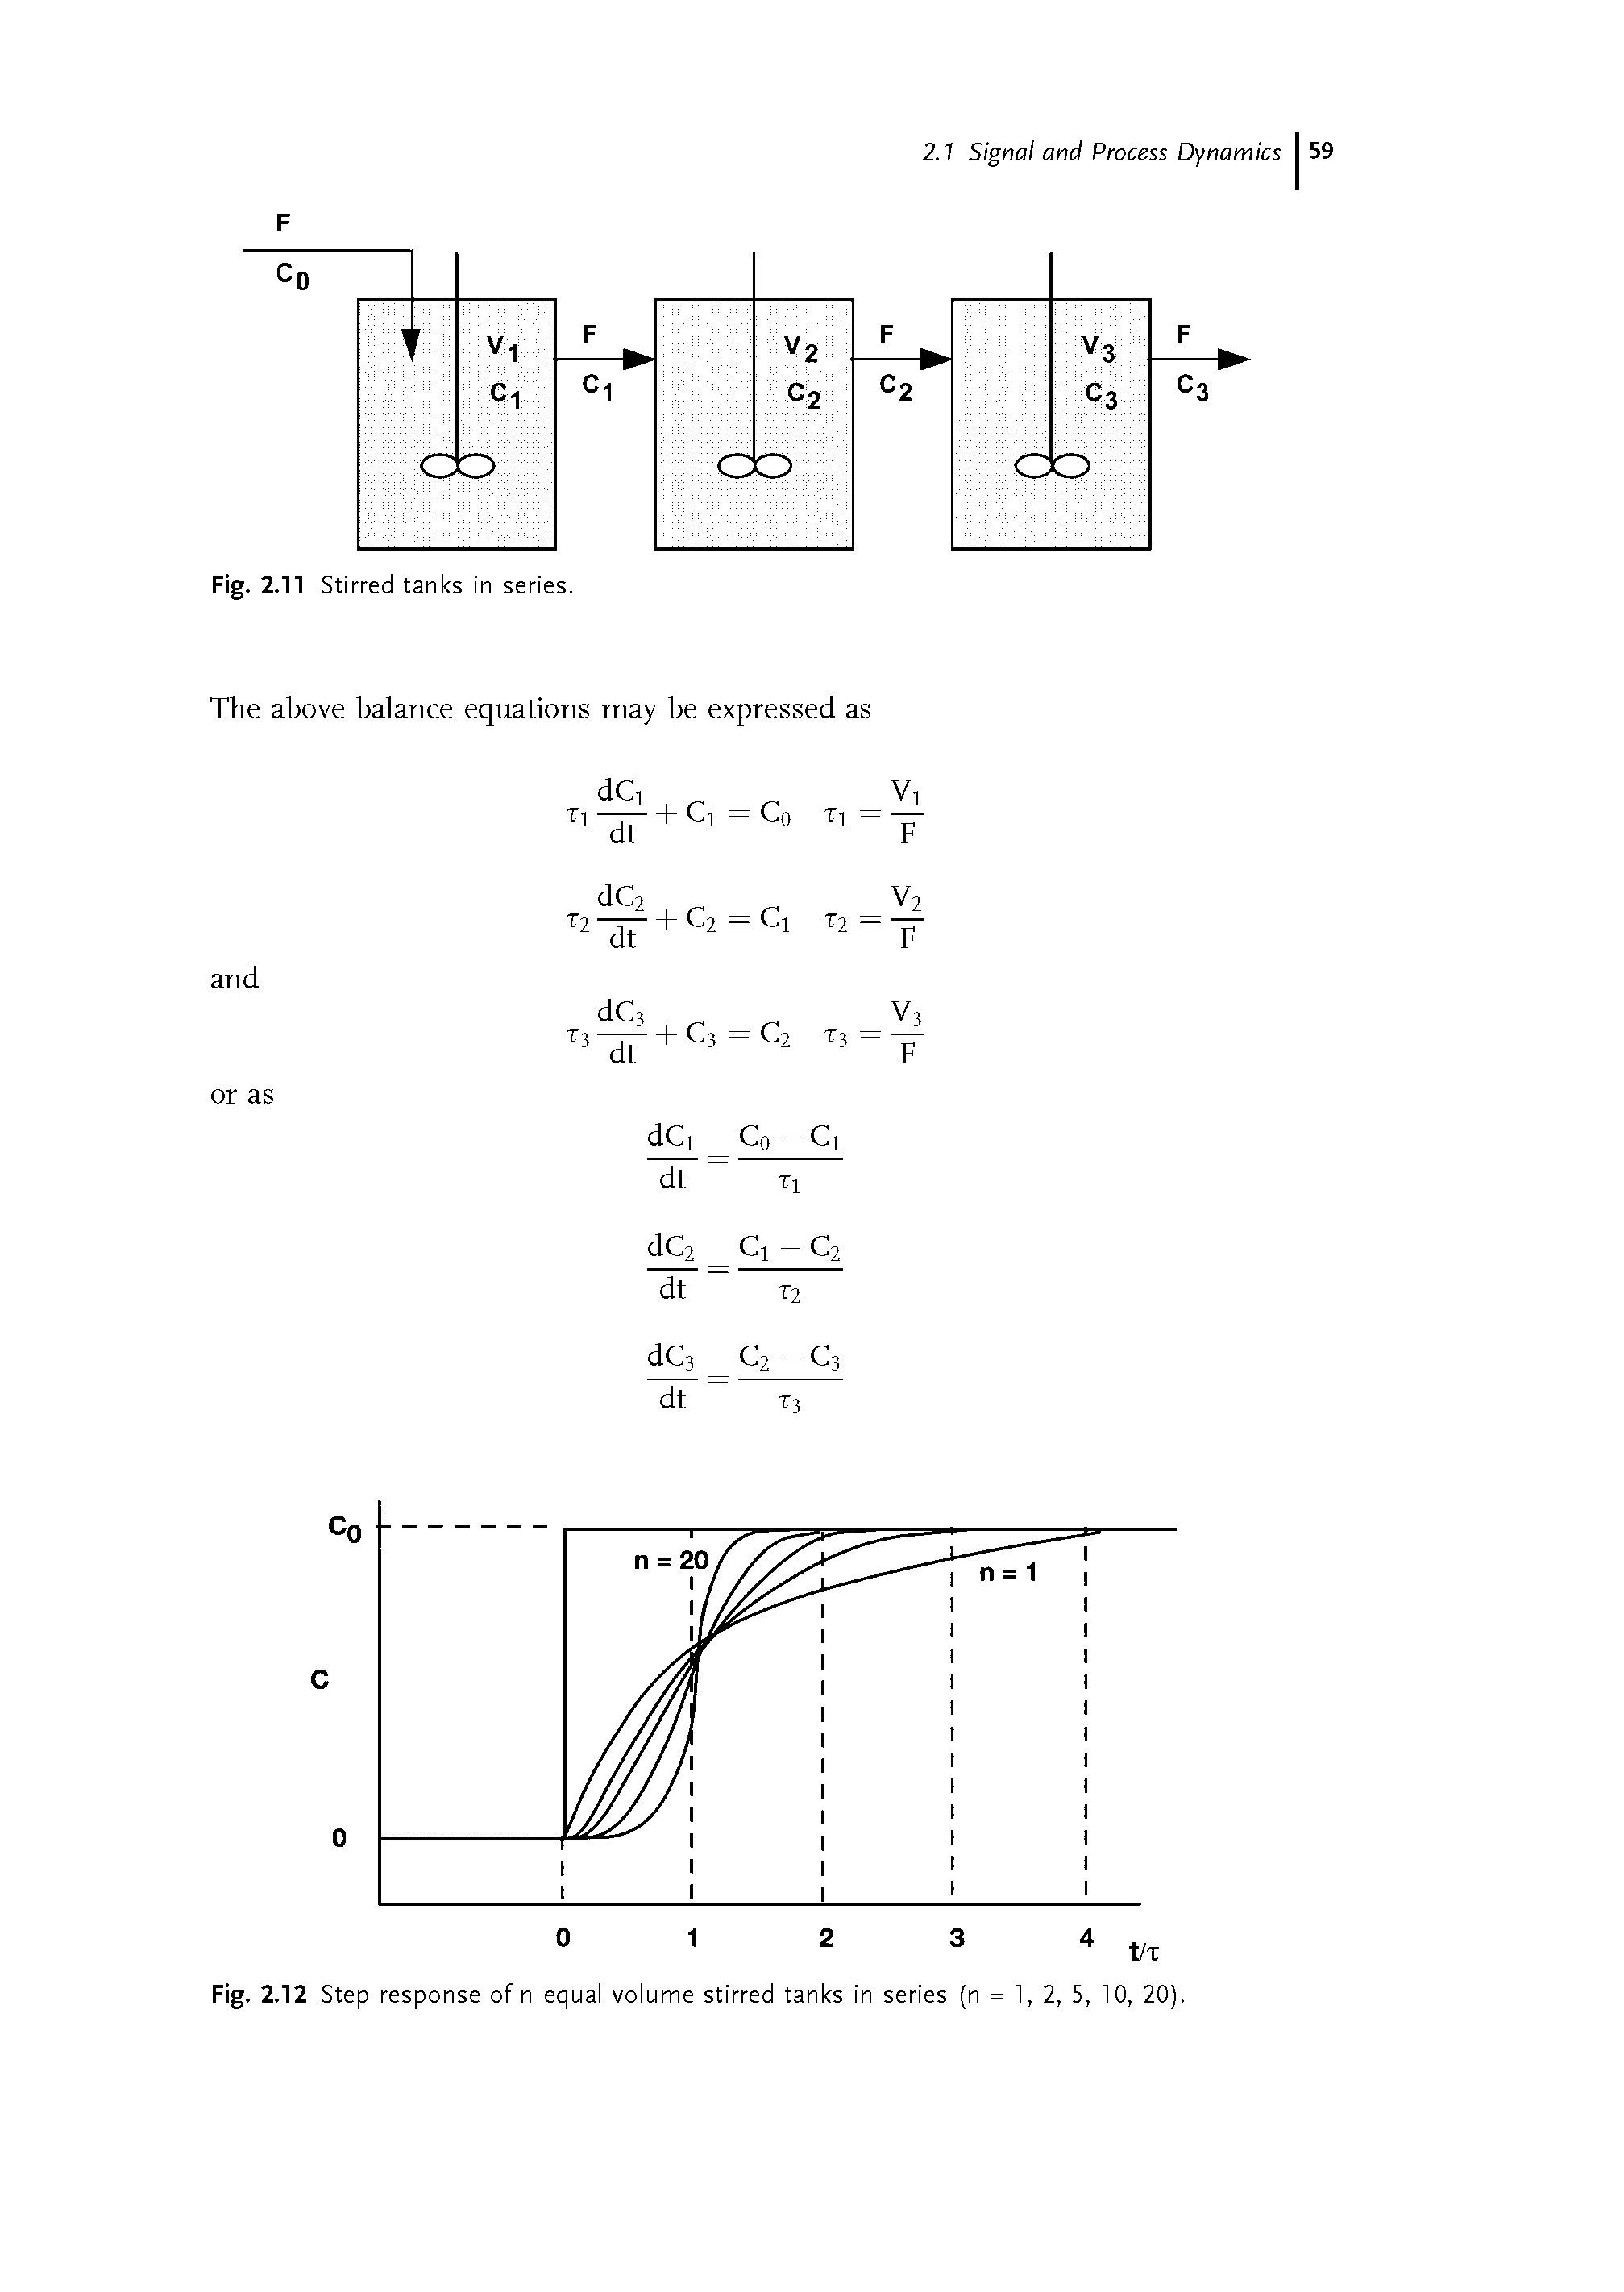 Fig. 2.12 Step response of n equal volume stirred tanks in series (n = 1, 2, 5, 10, 20).